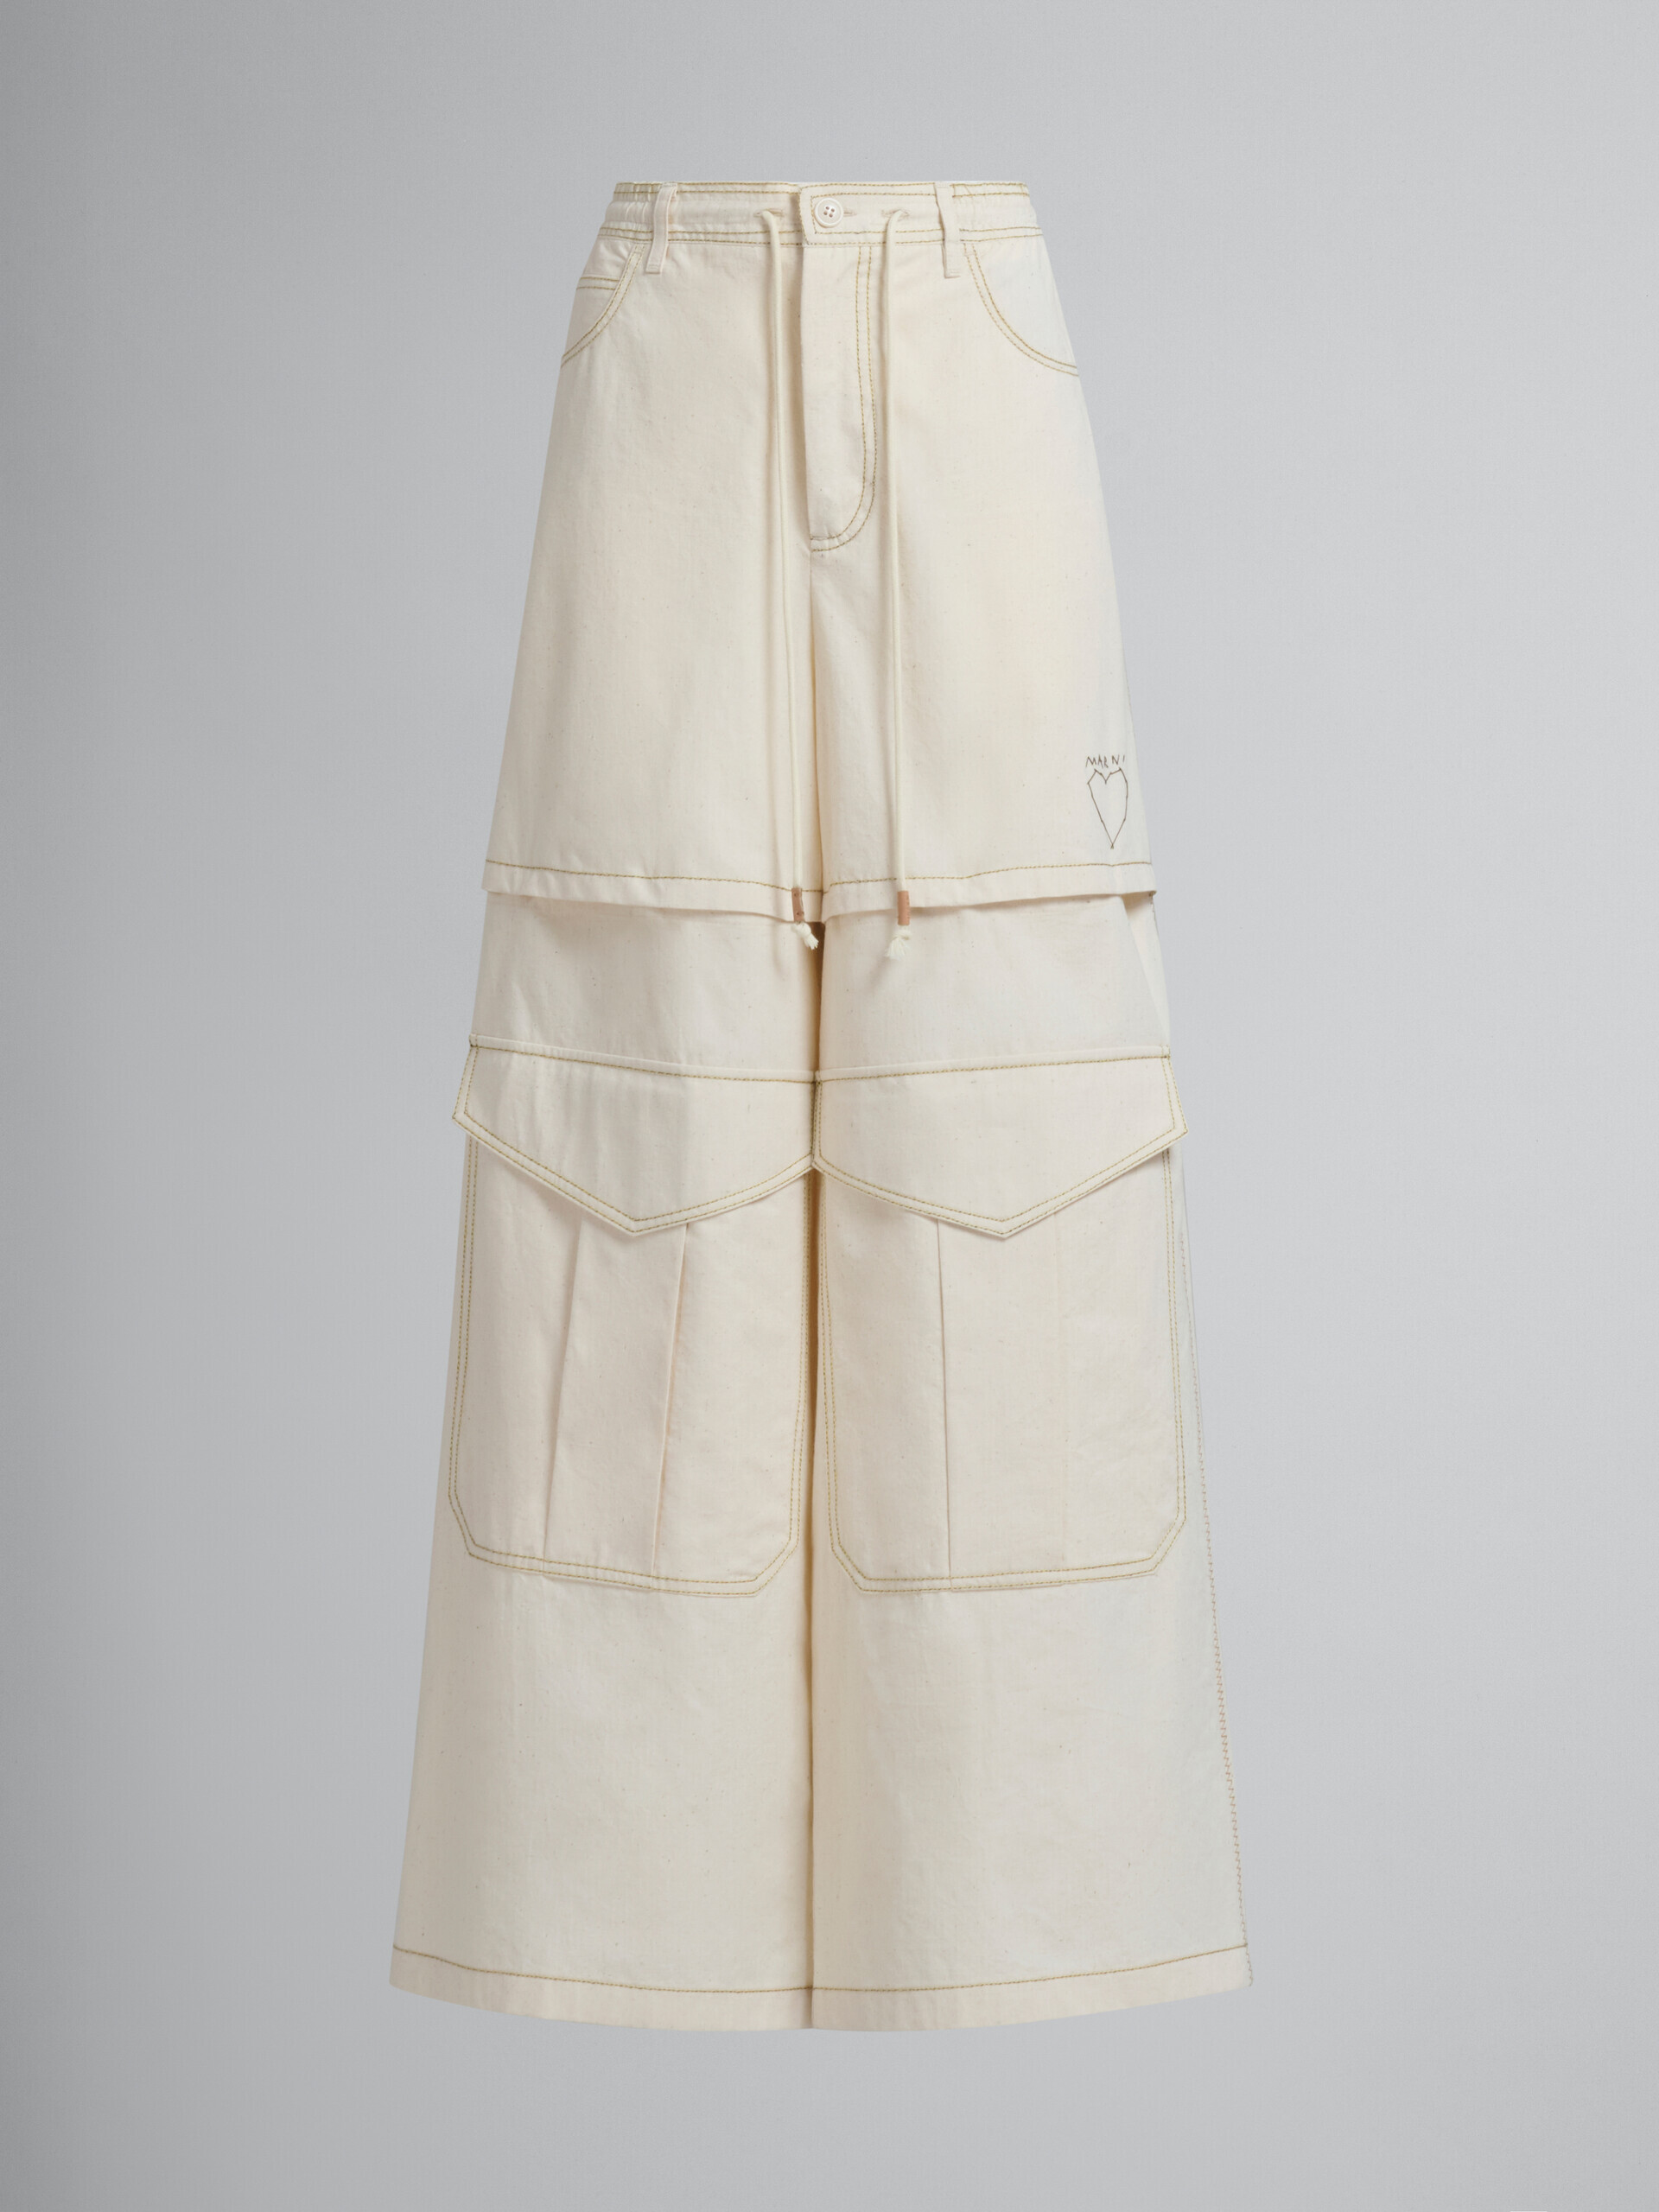 Pantalon cargo Marni en toile de coton organique beige clair avec surpiqûres - Pantalons - Image 1